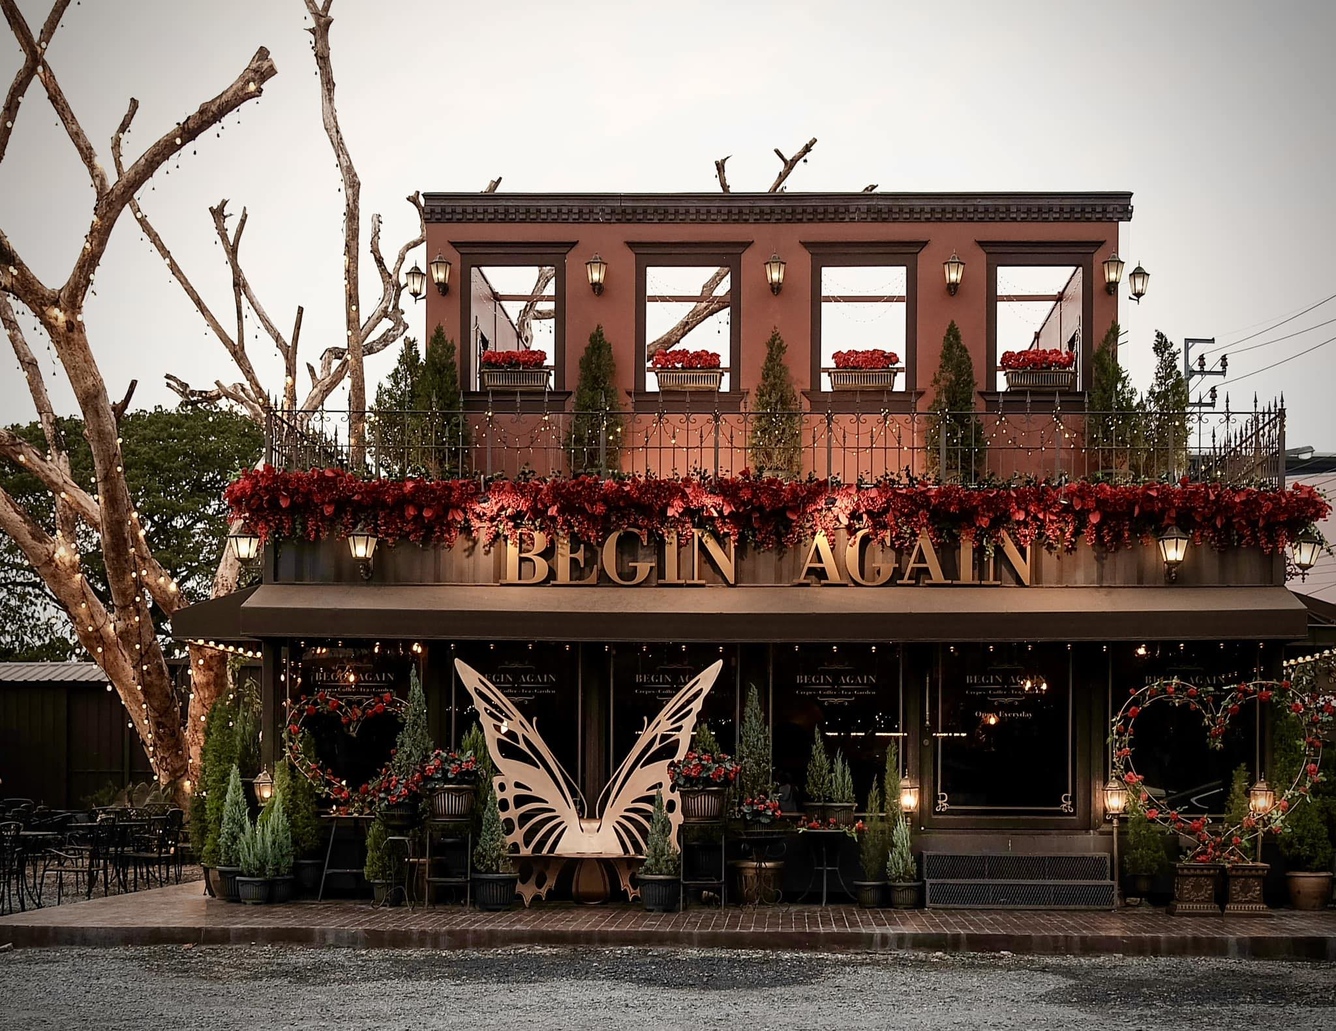 6. Begin Again Cafe – Quán cafe của sự khởi đầu